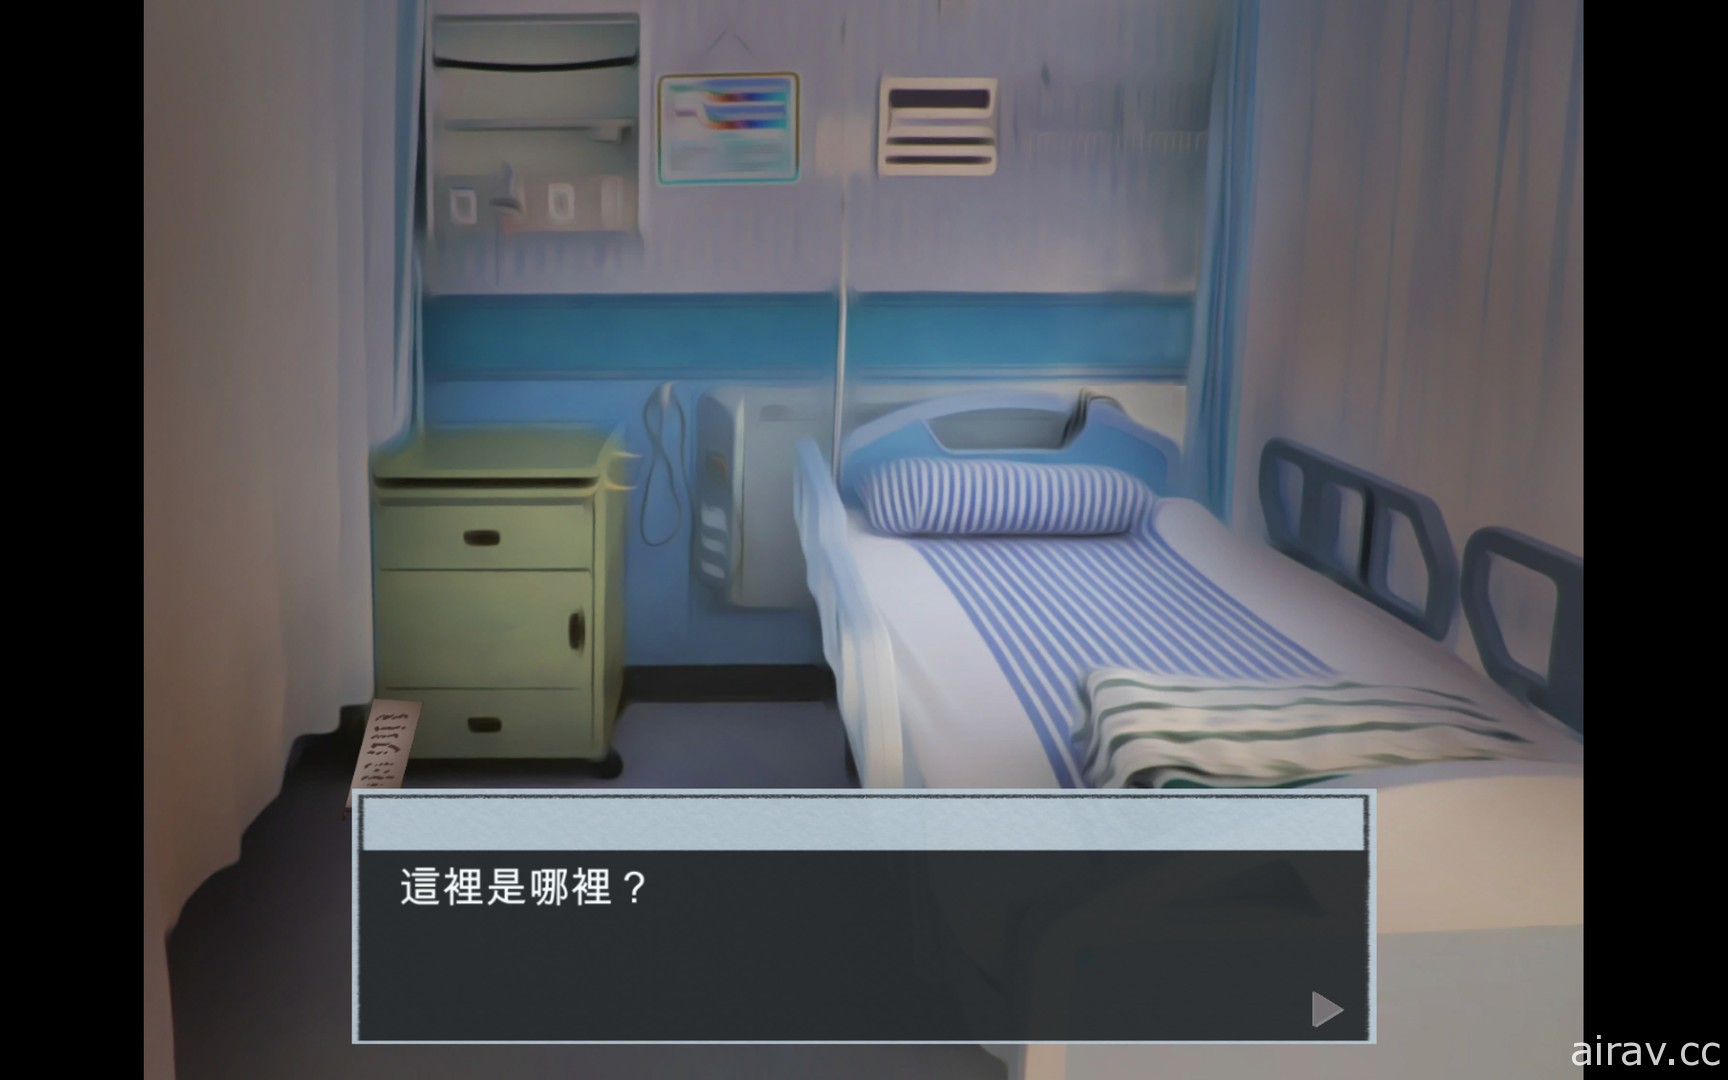 台灣醫師耗時三年製作解謎遊戲《脫出 失憶病棟》已登上 Steam 平台